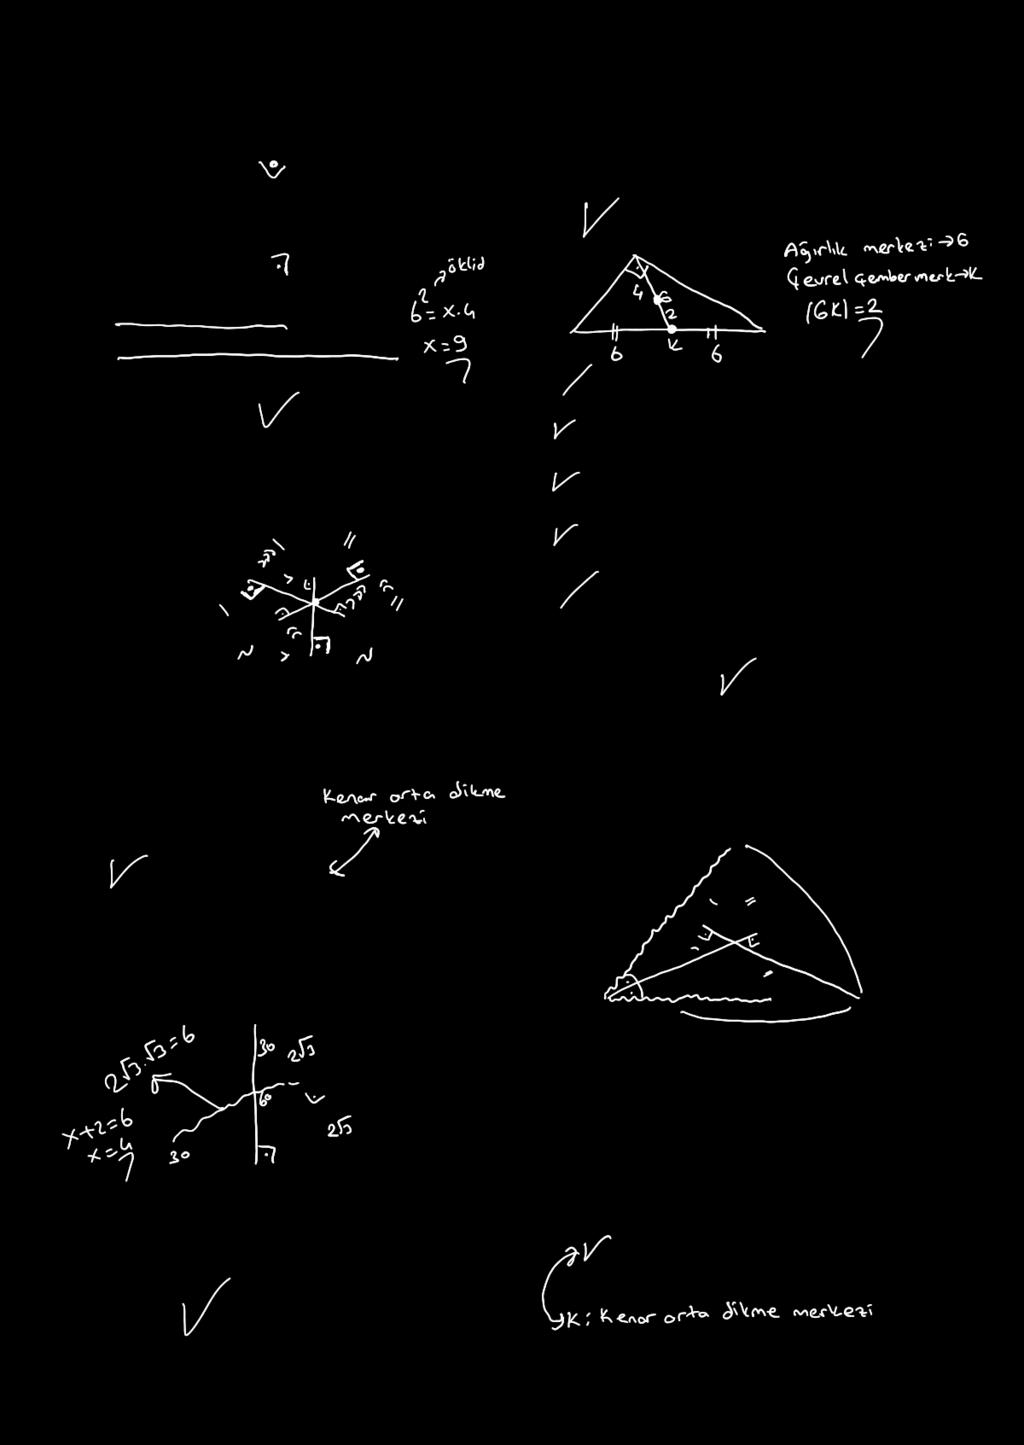 ÜÇG MZ 7. 6 10. Hipotenüs uzunluğu 1 cm olan bir dik üçgenin ağırlık merkezi ile çevrel çemberinin merkezi arasındaki uzaklık kaç cm dir?